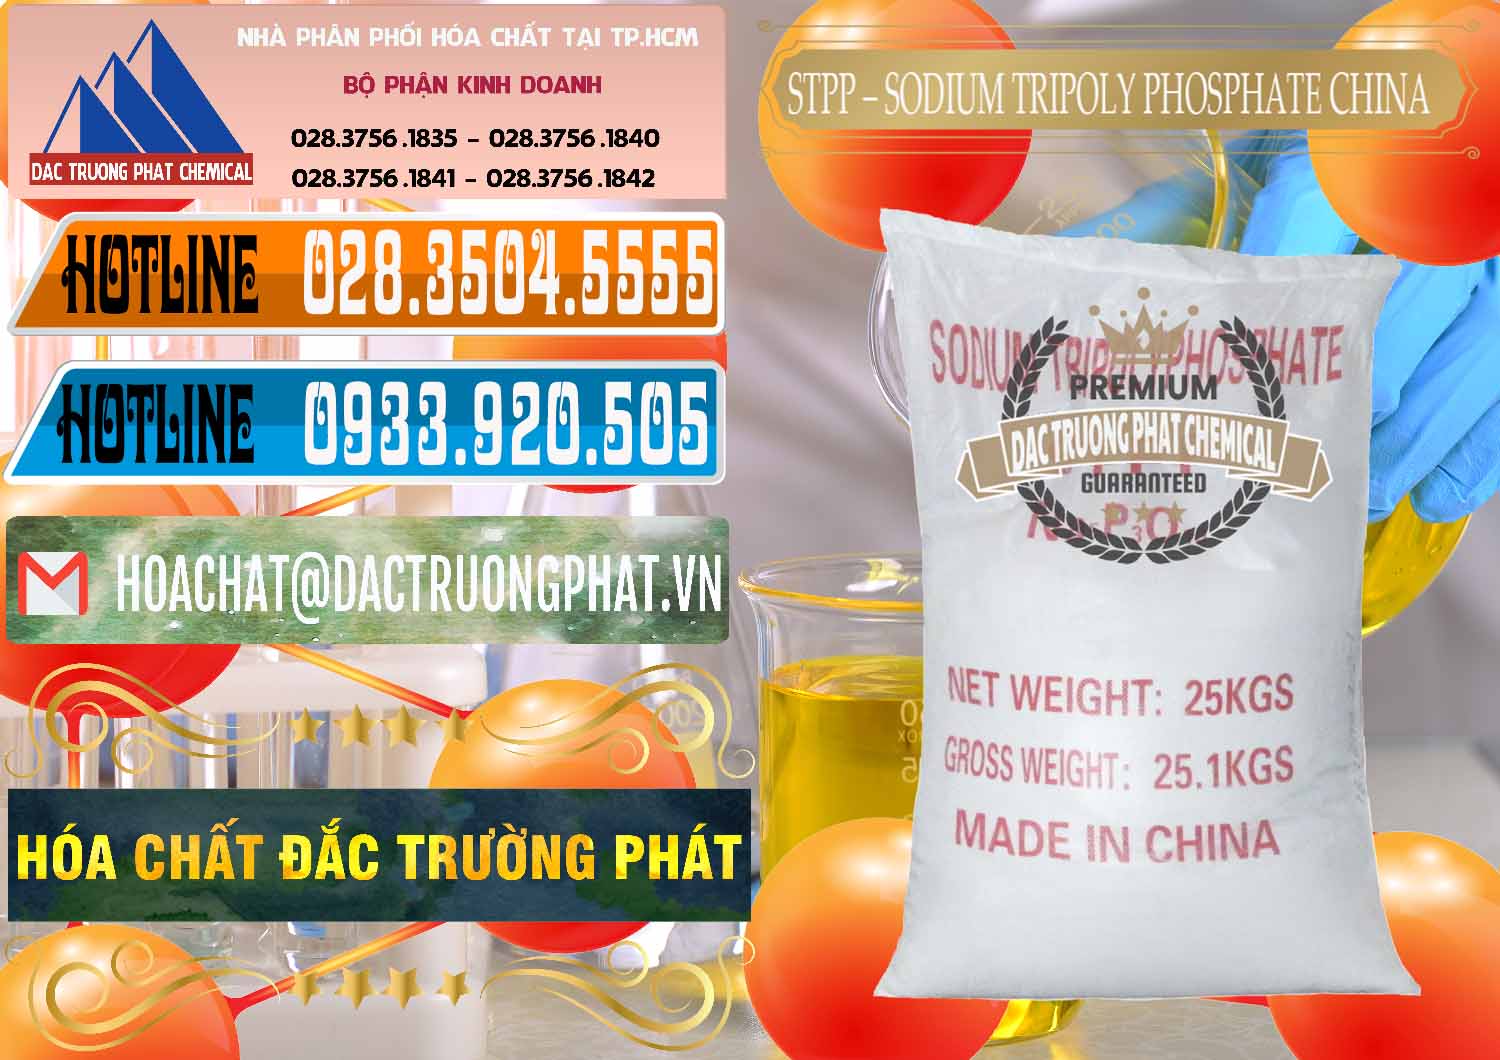 Nơi chuyên nhập khẩu và bán Sodium Tripoly Phosphate - STPP 96% Chữ Đỏ Trung Quốc China - 0155 - Cty cung cấp & nhập khẩu hóa chất tại TP.HCM - stmp.net